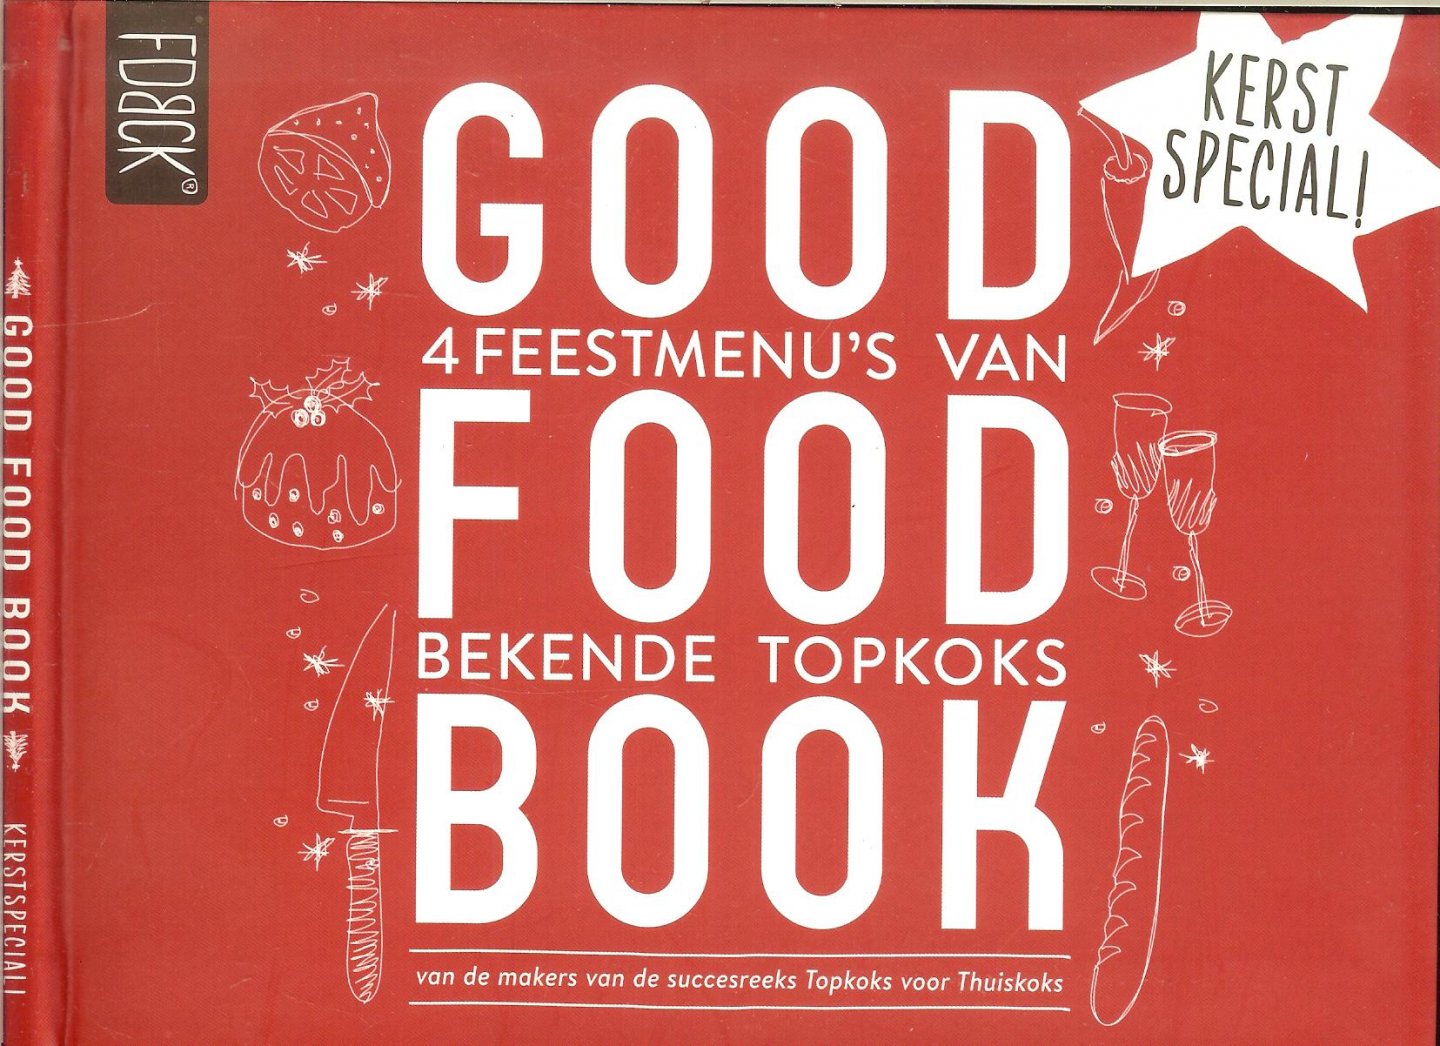 Blaauw Ron , Ronald Kunis, Niven Kunz, Ramon Beuk.  Kerstspecial  van vier top kok's - Good food book, vier (4) feestmenu's